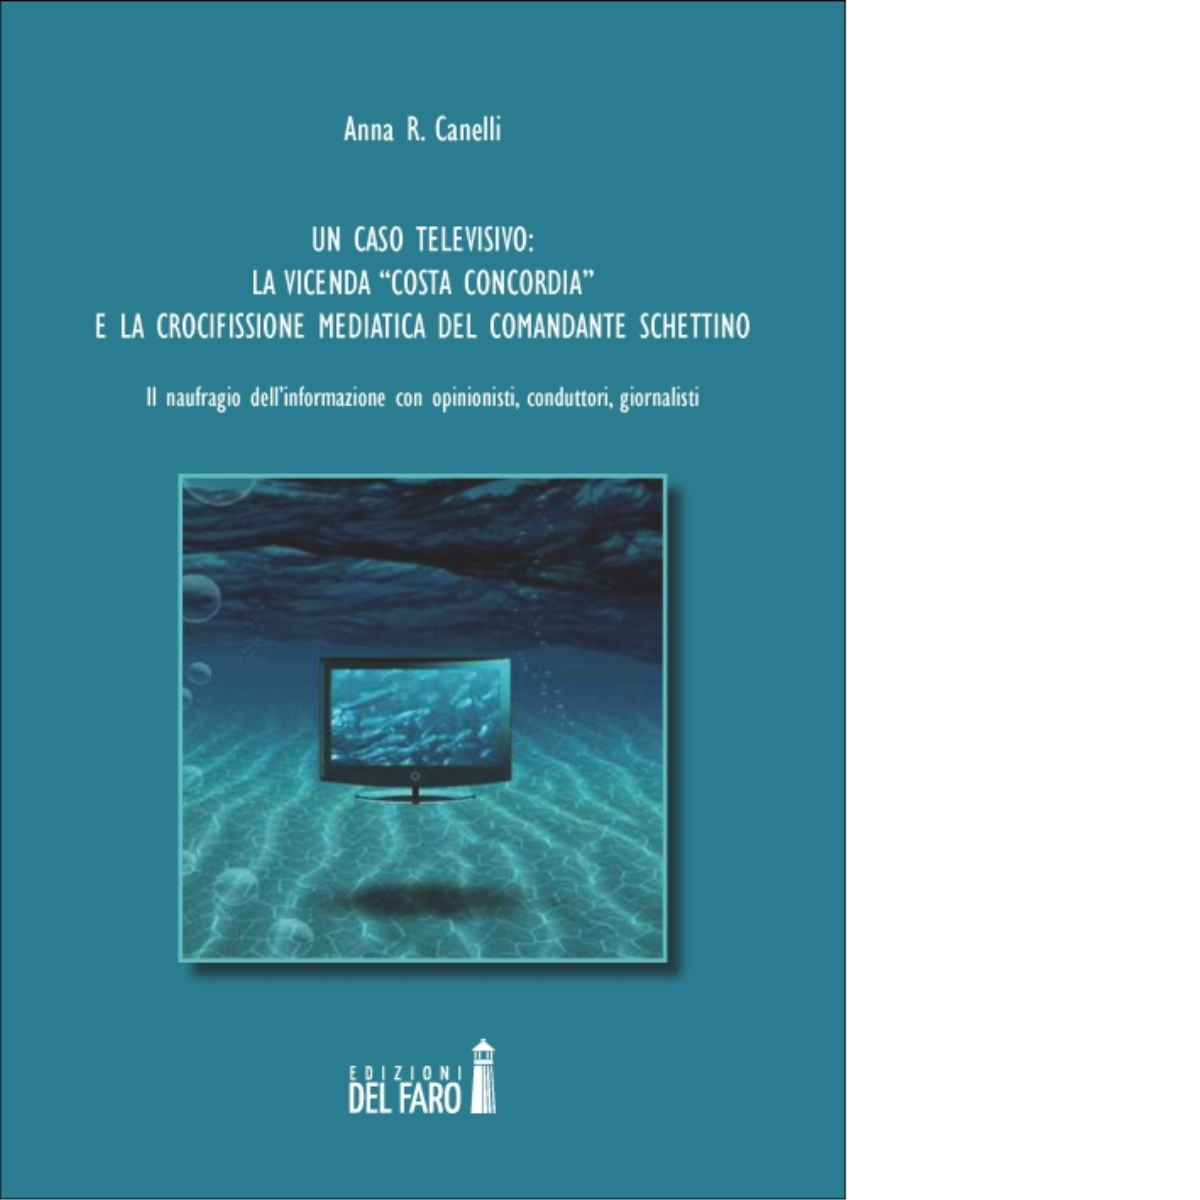 Un caso televisivo di Canelli Anna R. - Edizioni Del faro, 2014